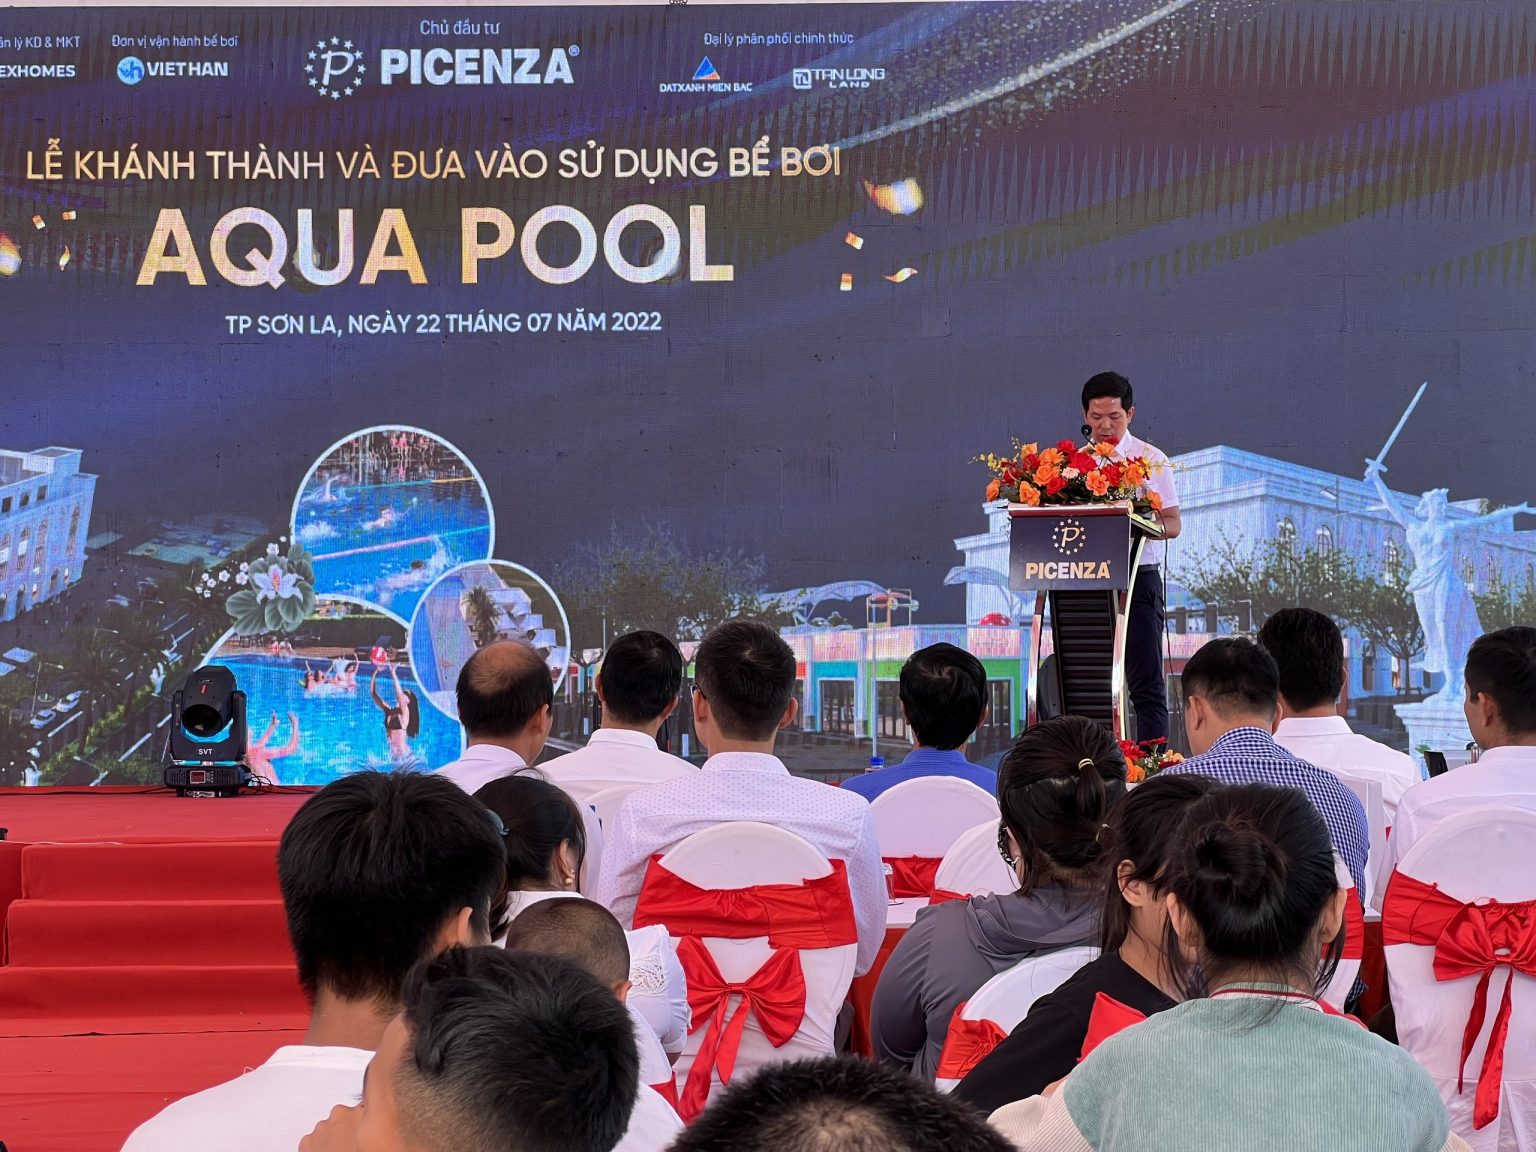 Chính thức khánh thành bể bơi tiêu chuẩn quốc gia đầu tiên tại Sơn La – Aqua Pool